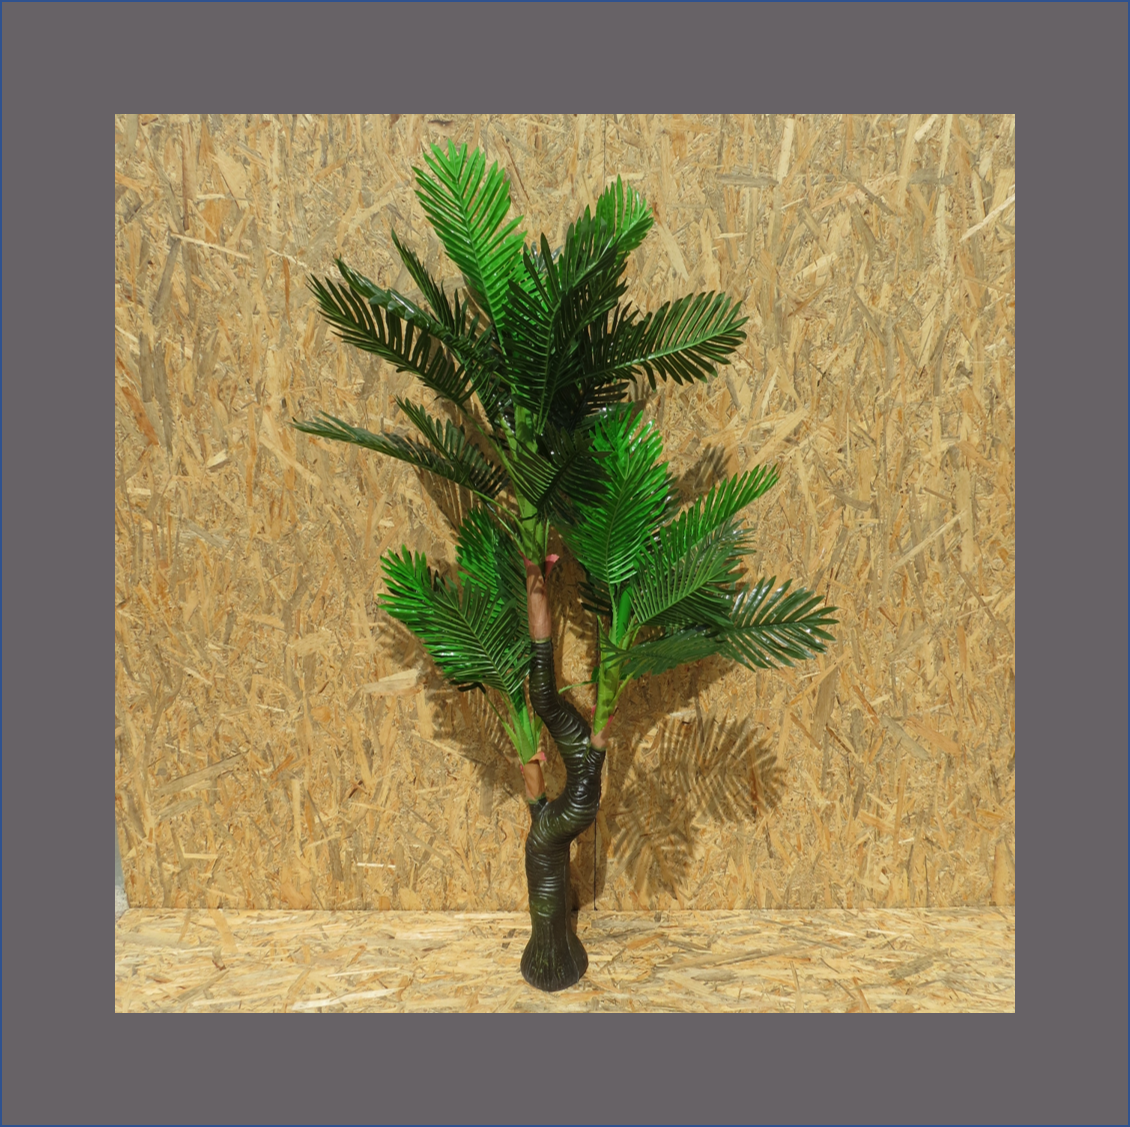 palm-tree